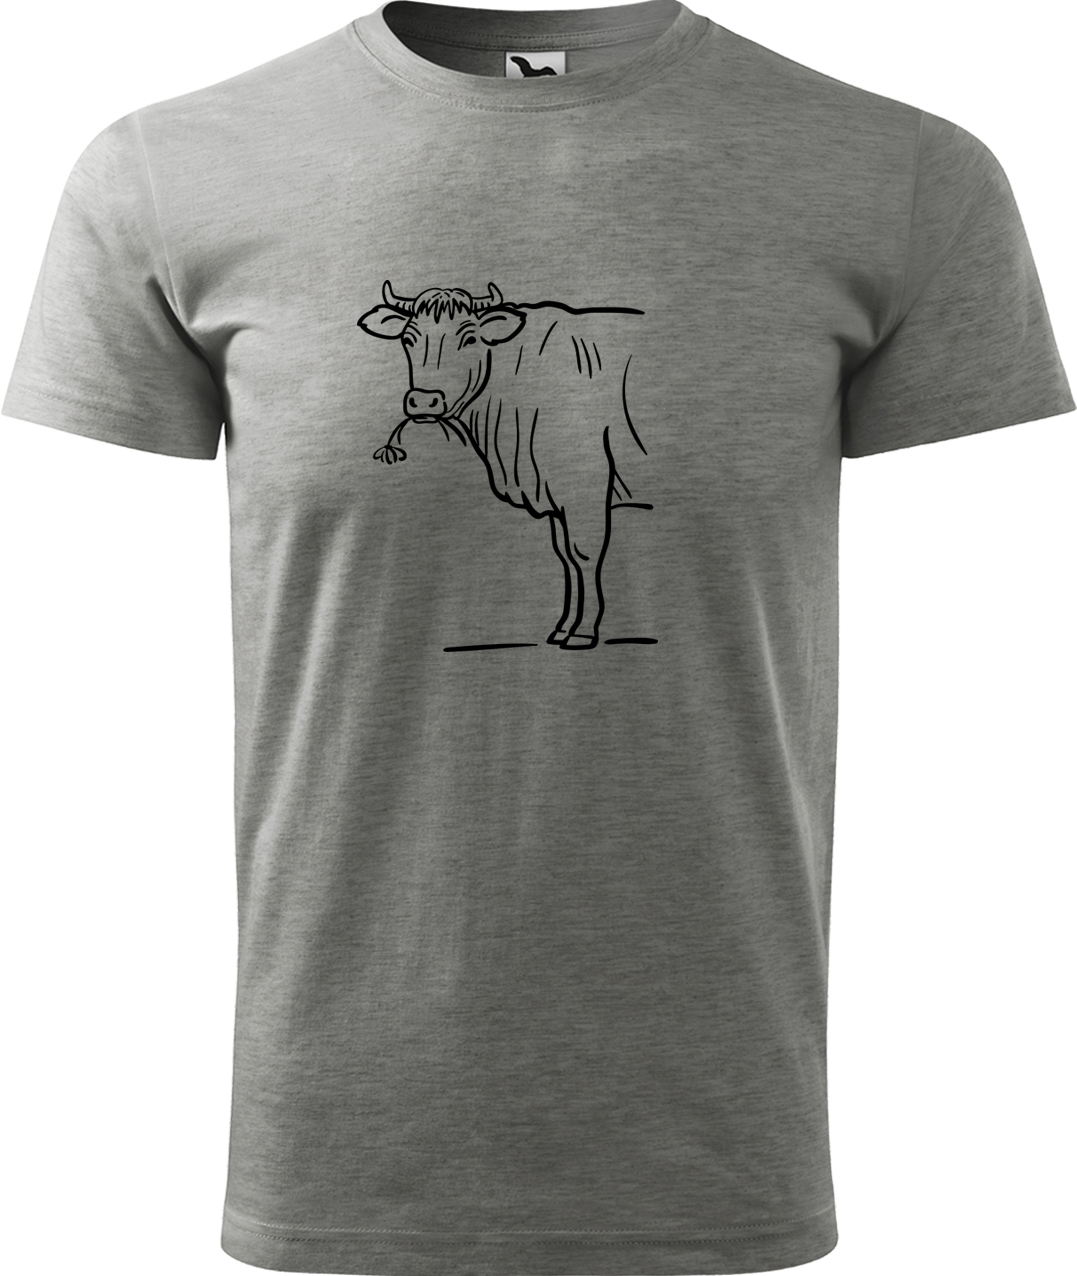 Pánské tričko s krávou - Býk Velikost: M, Barva: Tmavě šedý melír (12), Střih: pánský